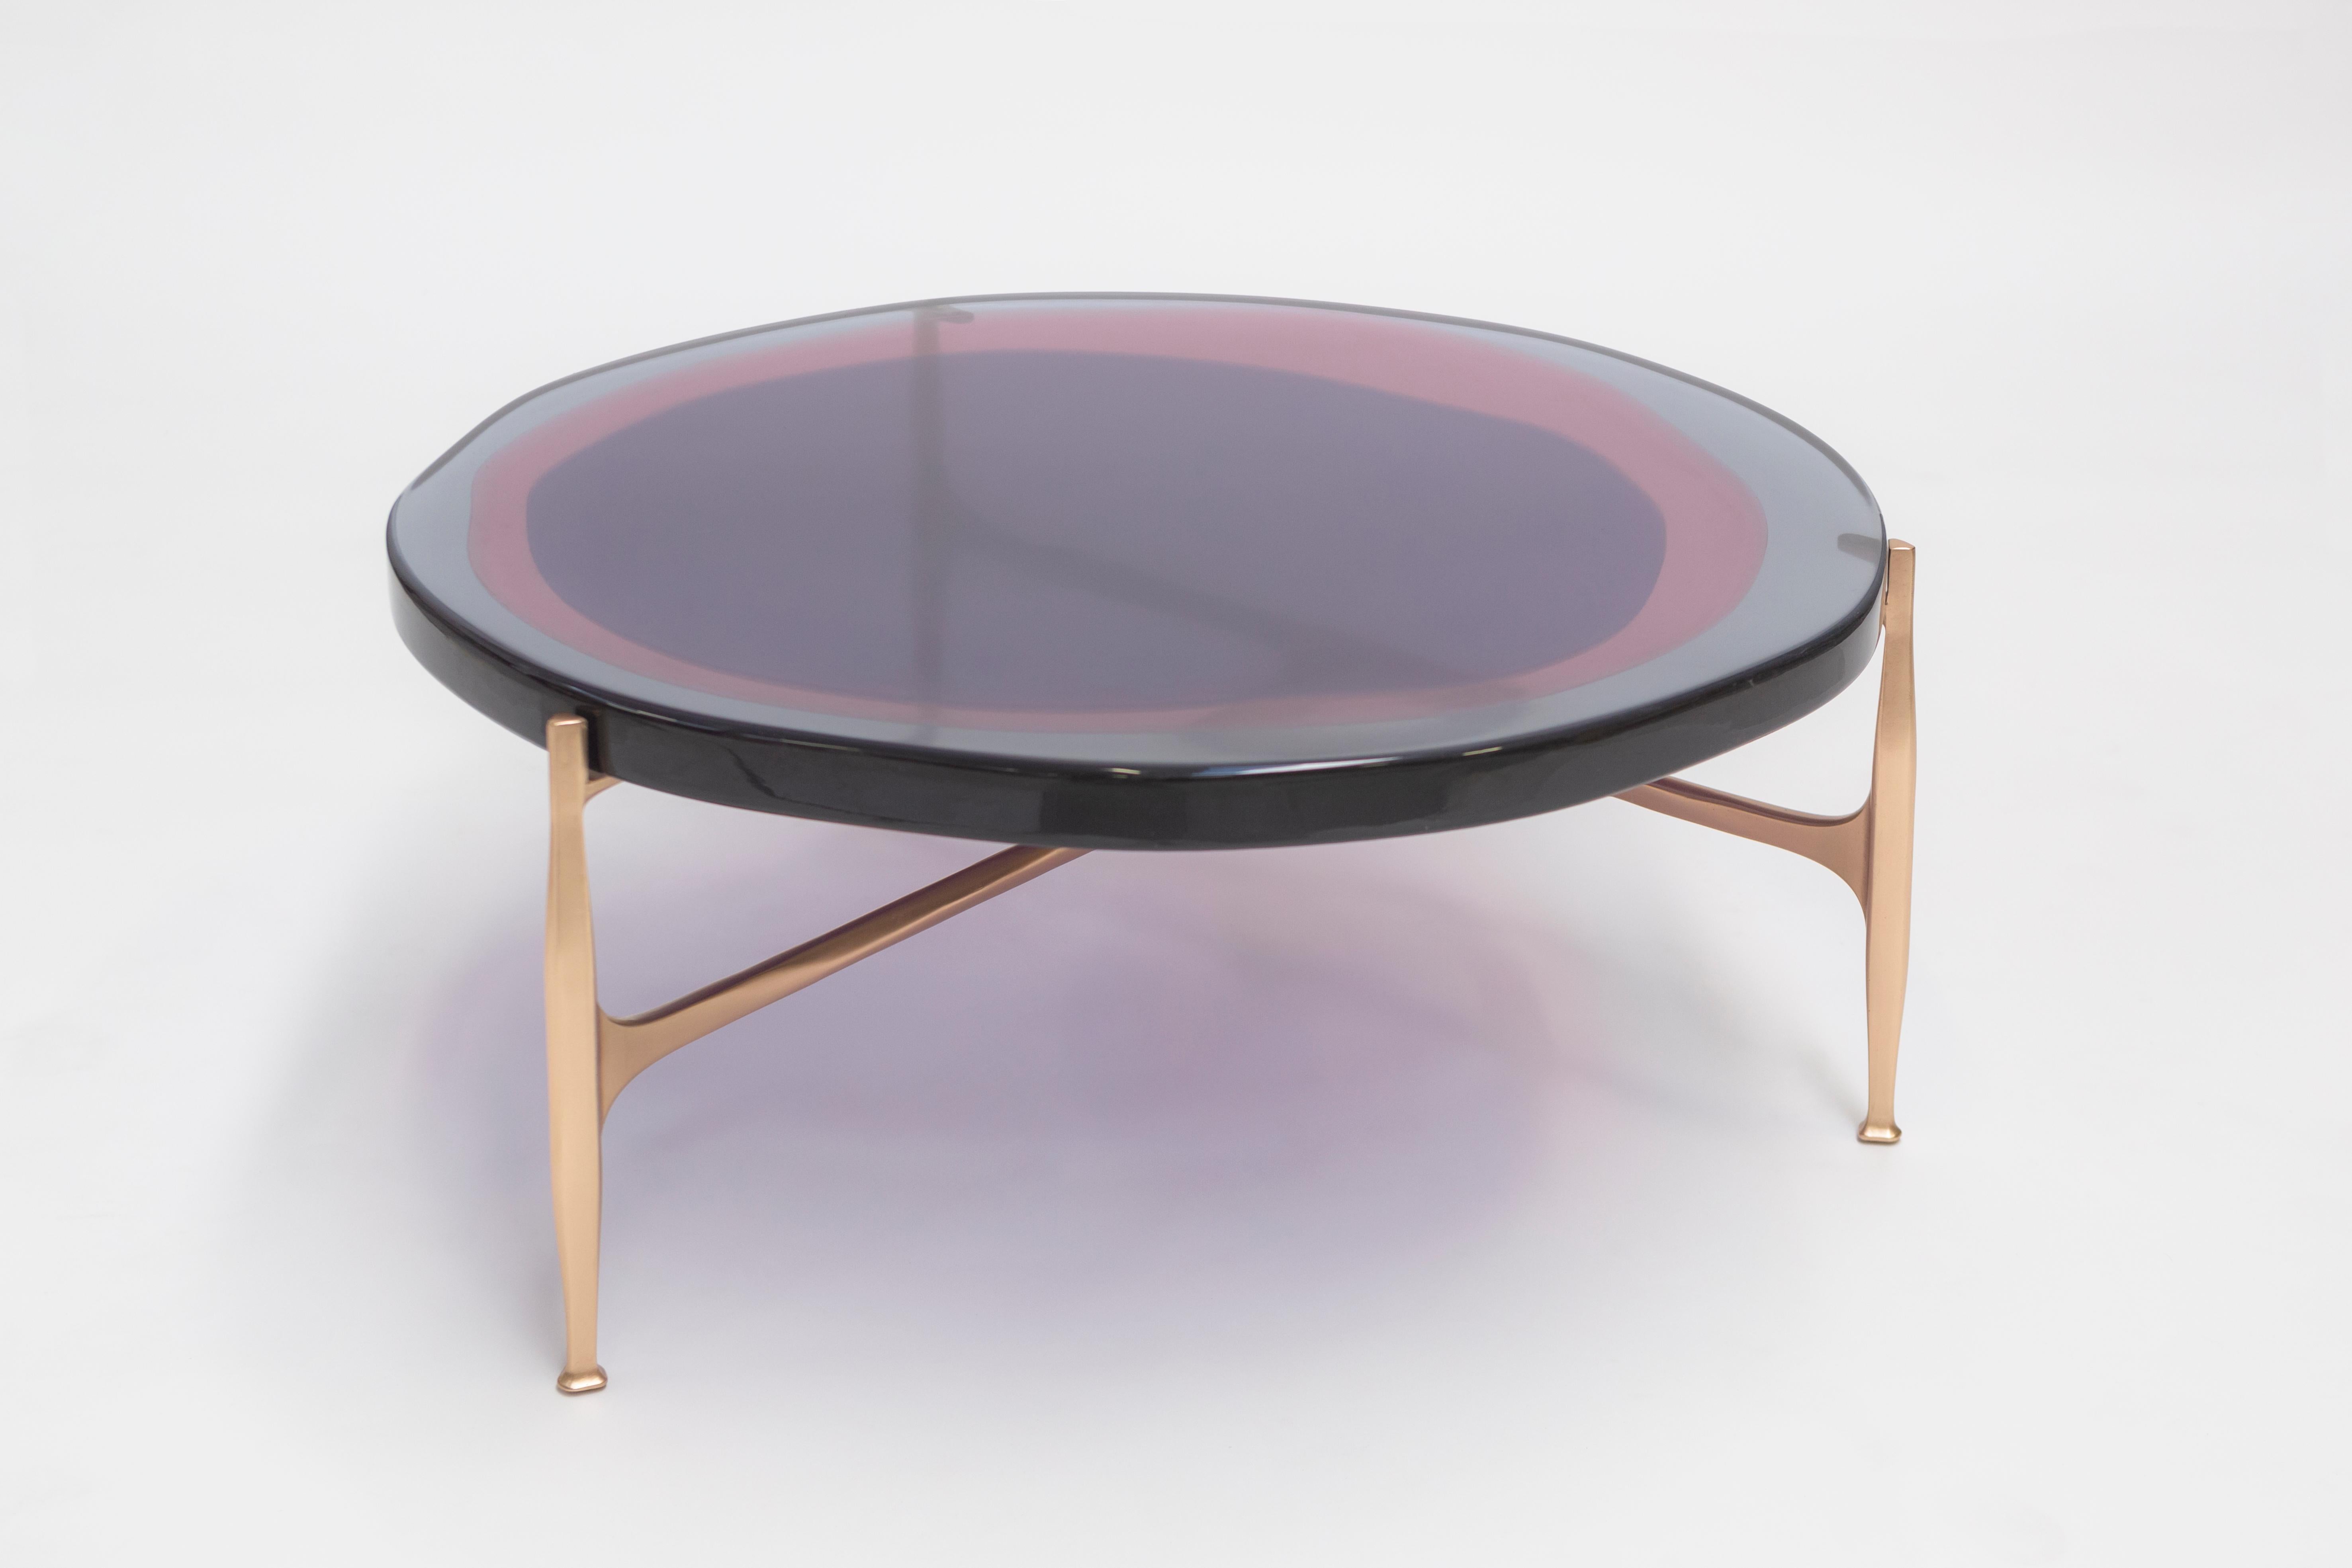 Mit einer unregelmäßigen, runden Platte aus transparentem und farbigem Harz, die in einem versetzten Muster auf einem Bronzegestell angeordnet ist, spielt dieser Tisch mit dem Licht. Die Herstellung erfolgt in einem speziellen Harzgießverfahren. Das